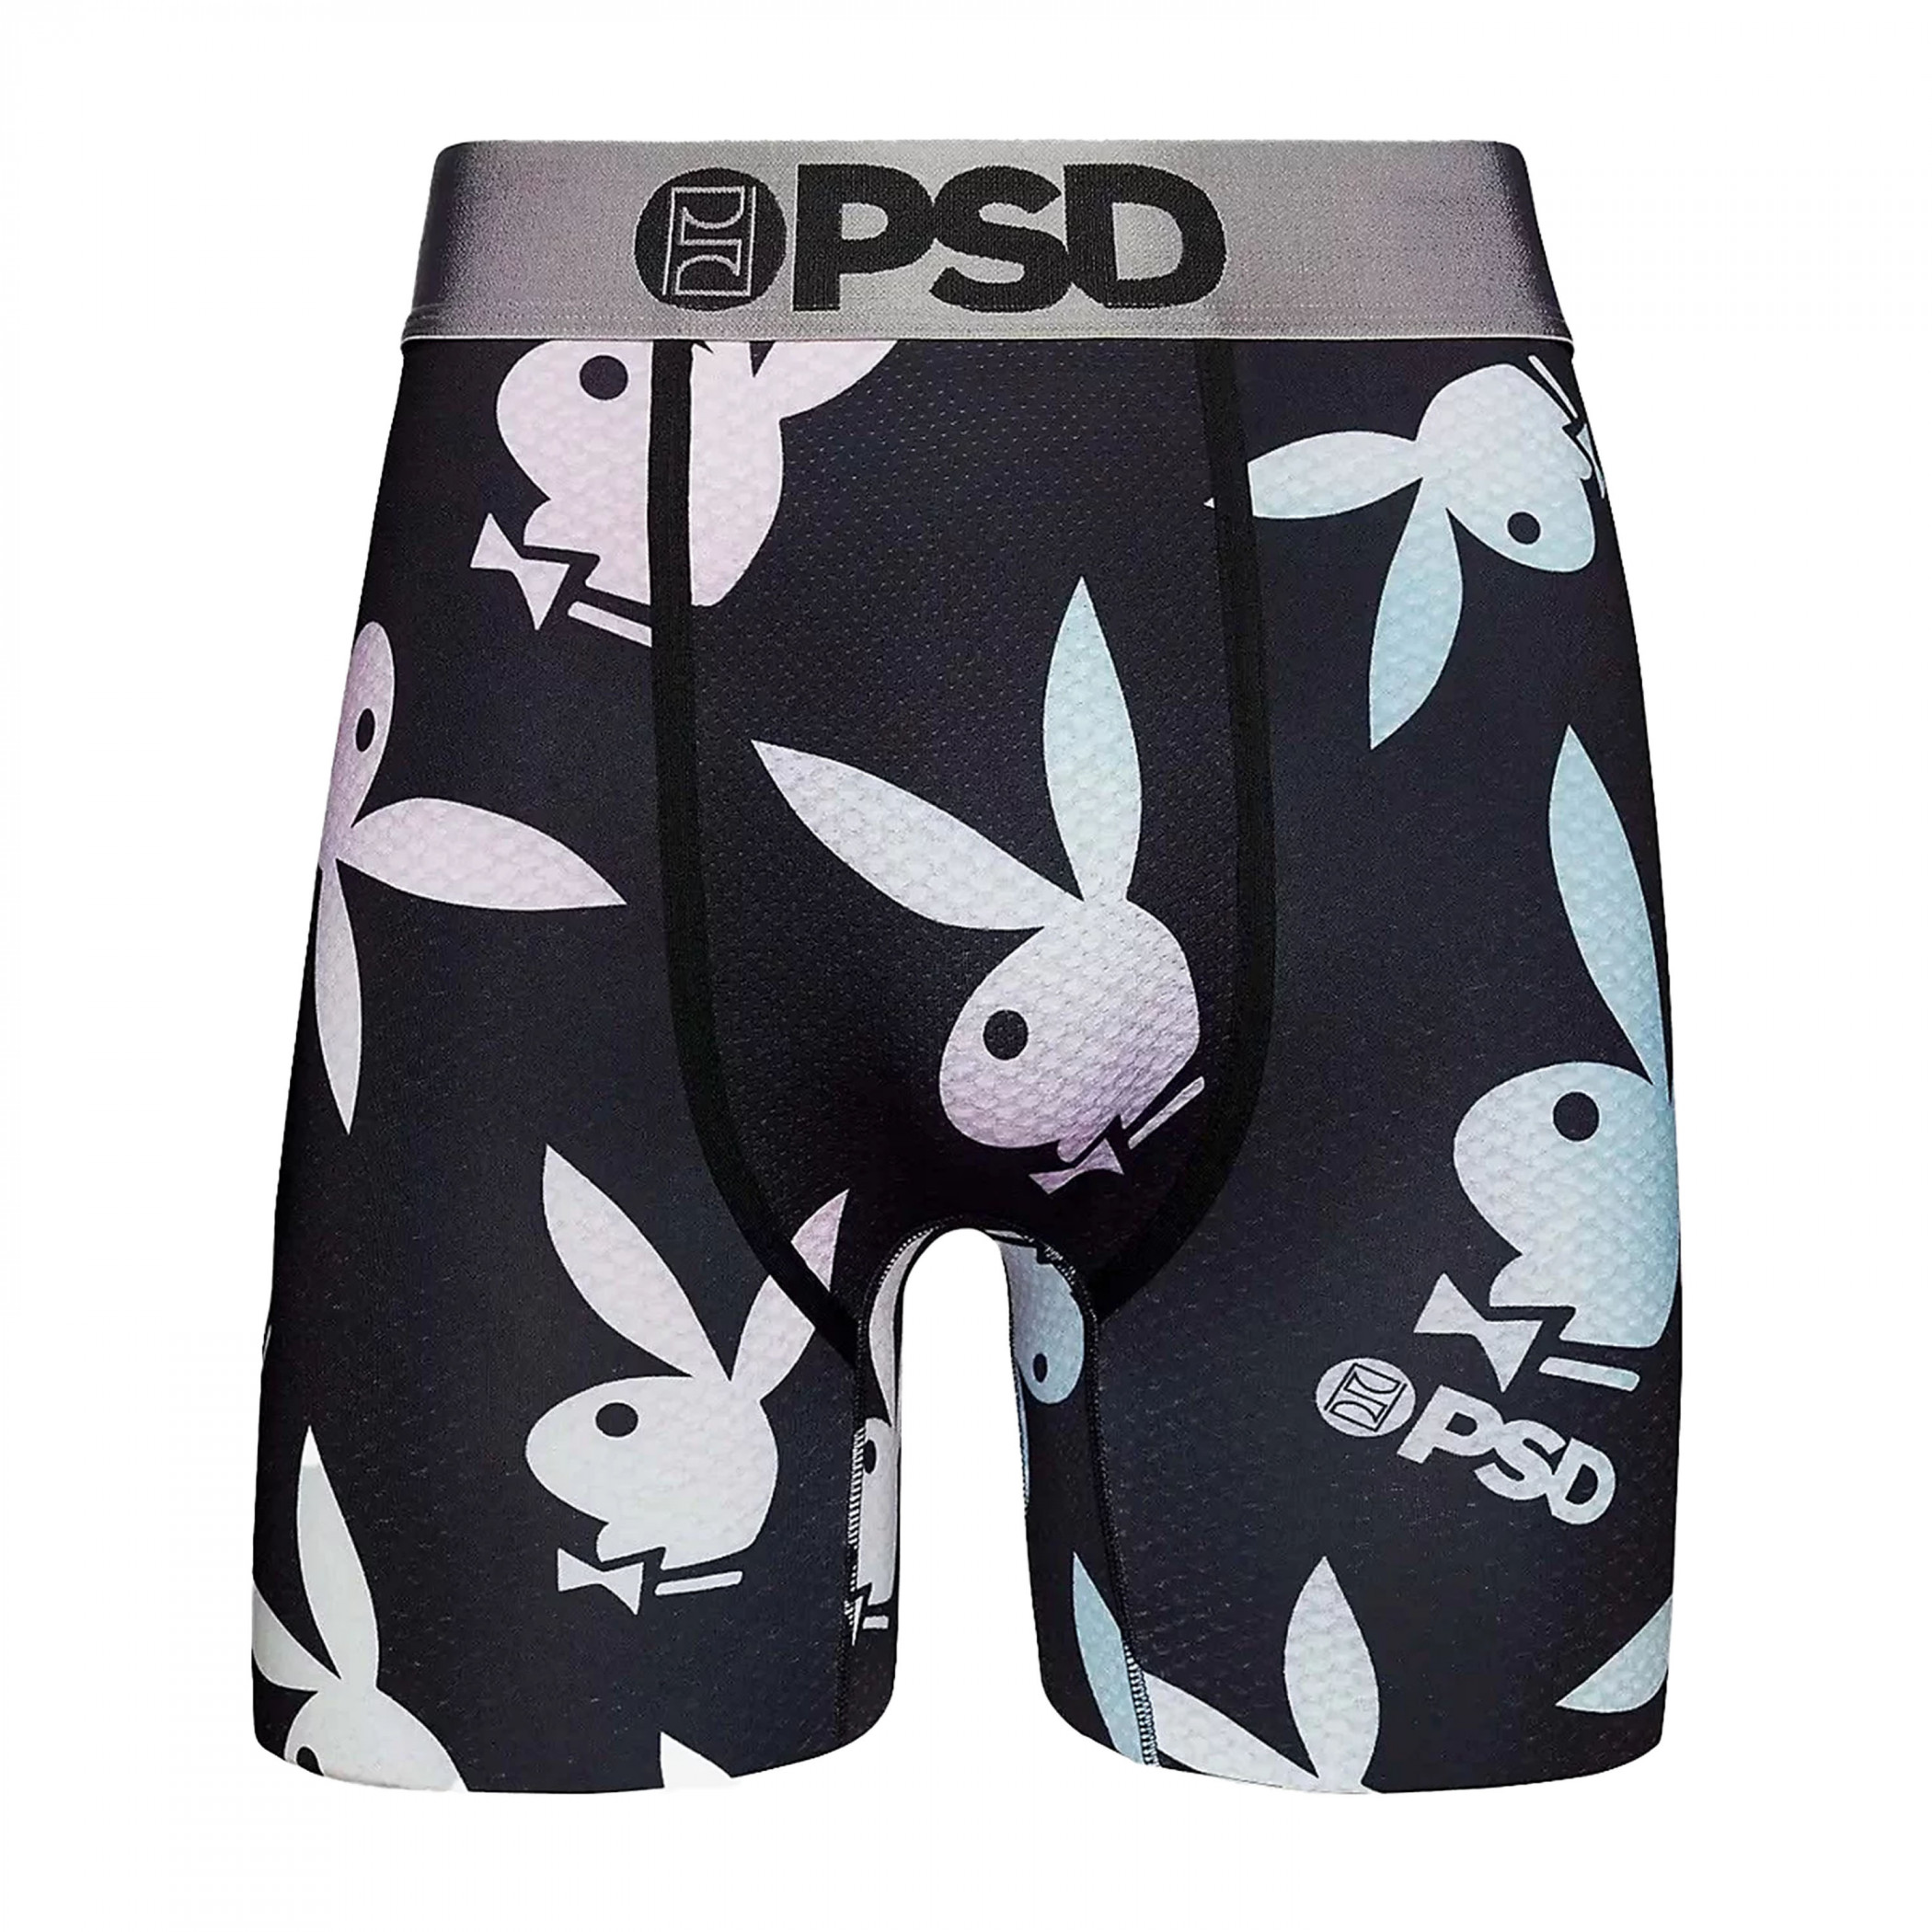 Playboy Varsity Style Microfiber Blend Women's PSD Boy Shorts